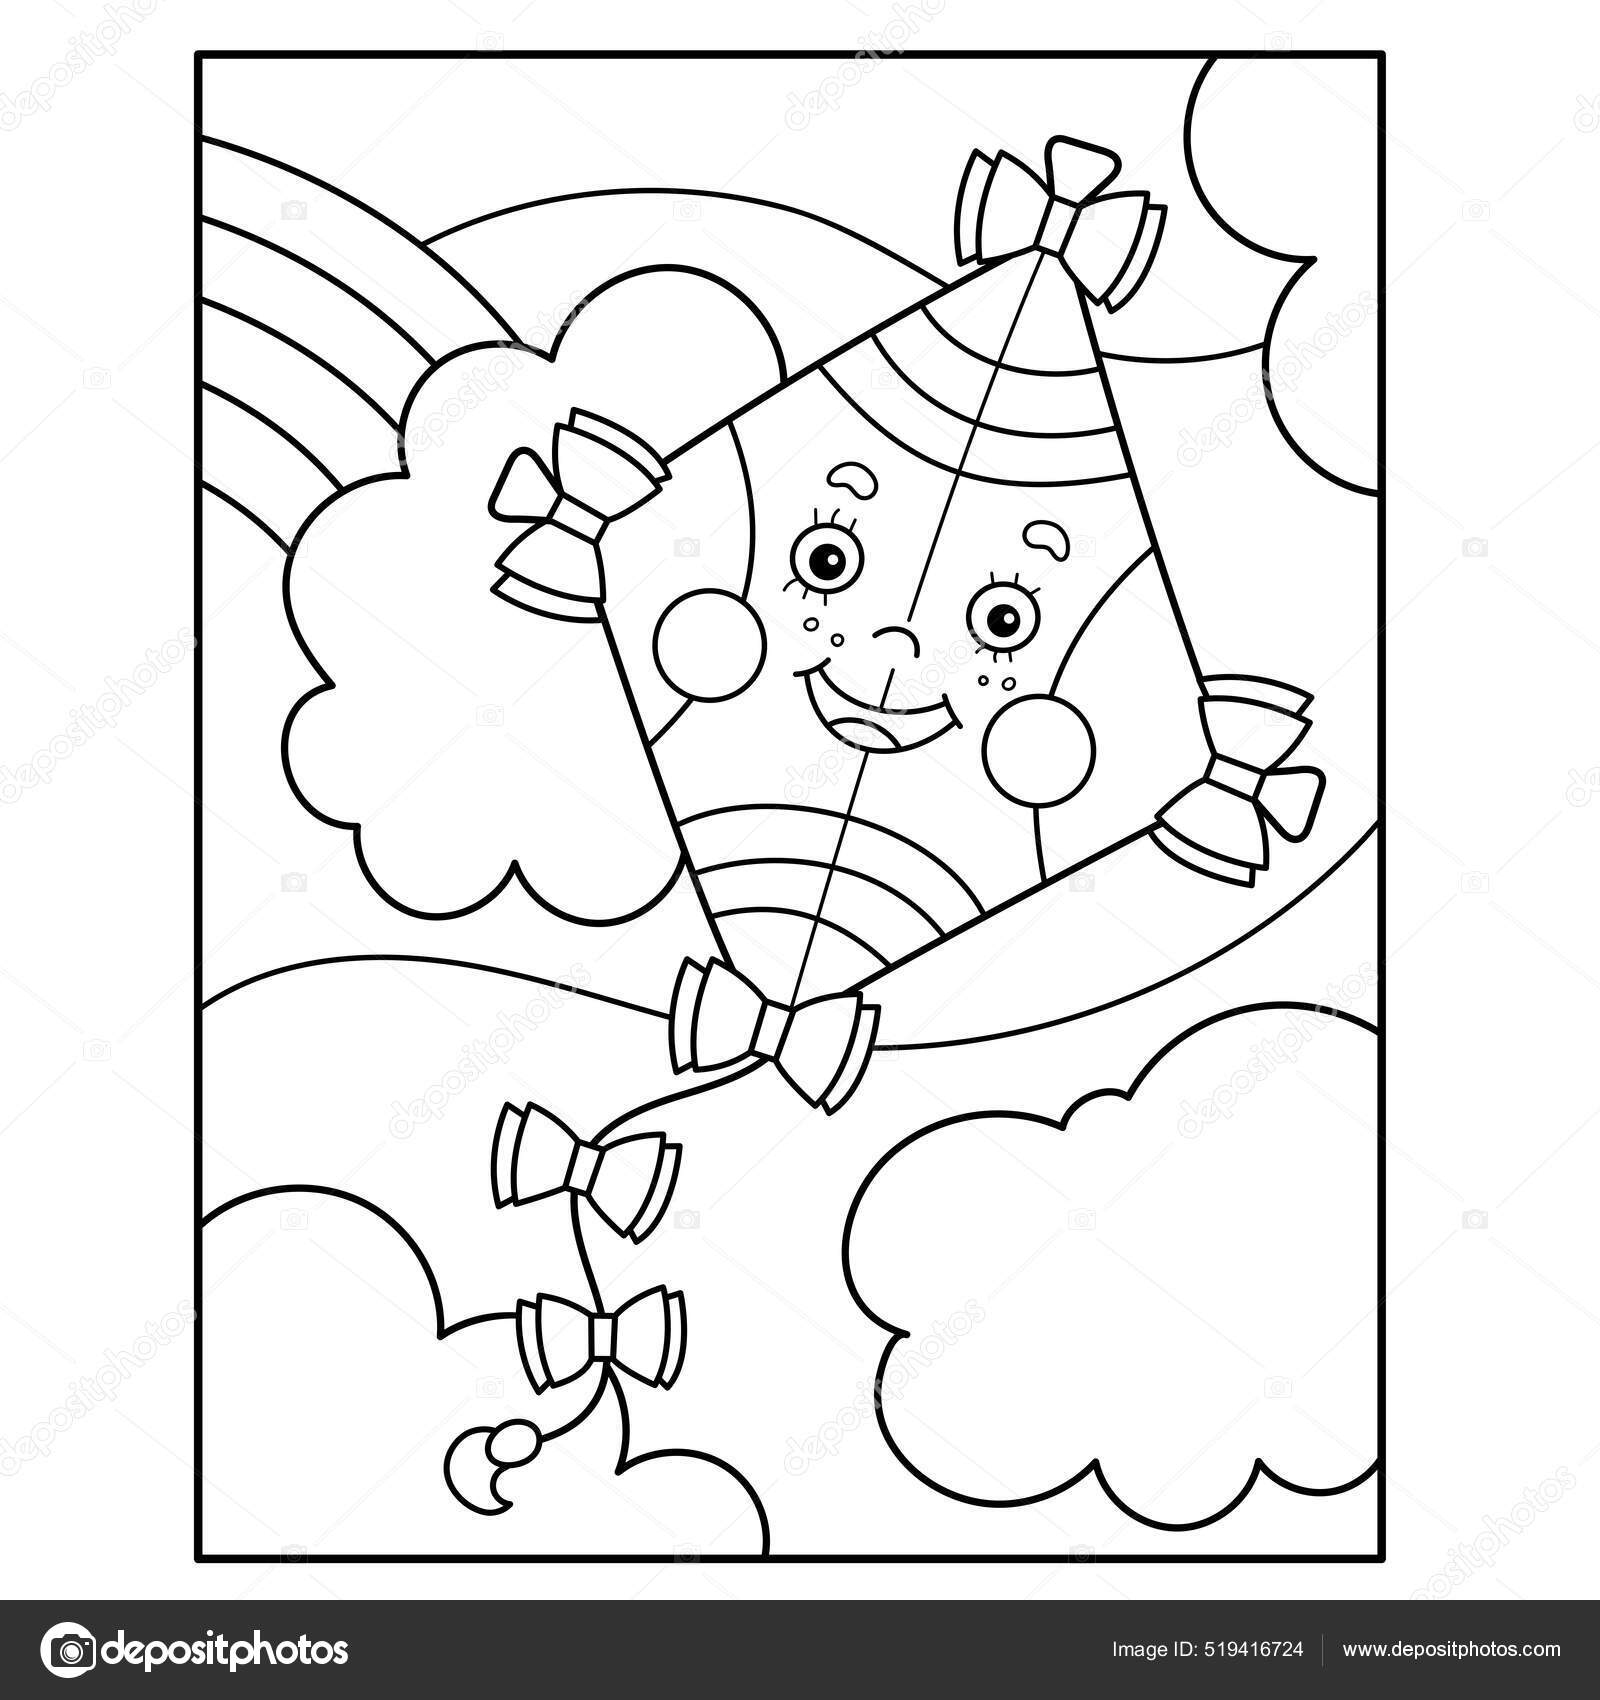 Página para colorir de gato de desenho animado alegre, fácil e divertido  para crianças